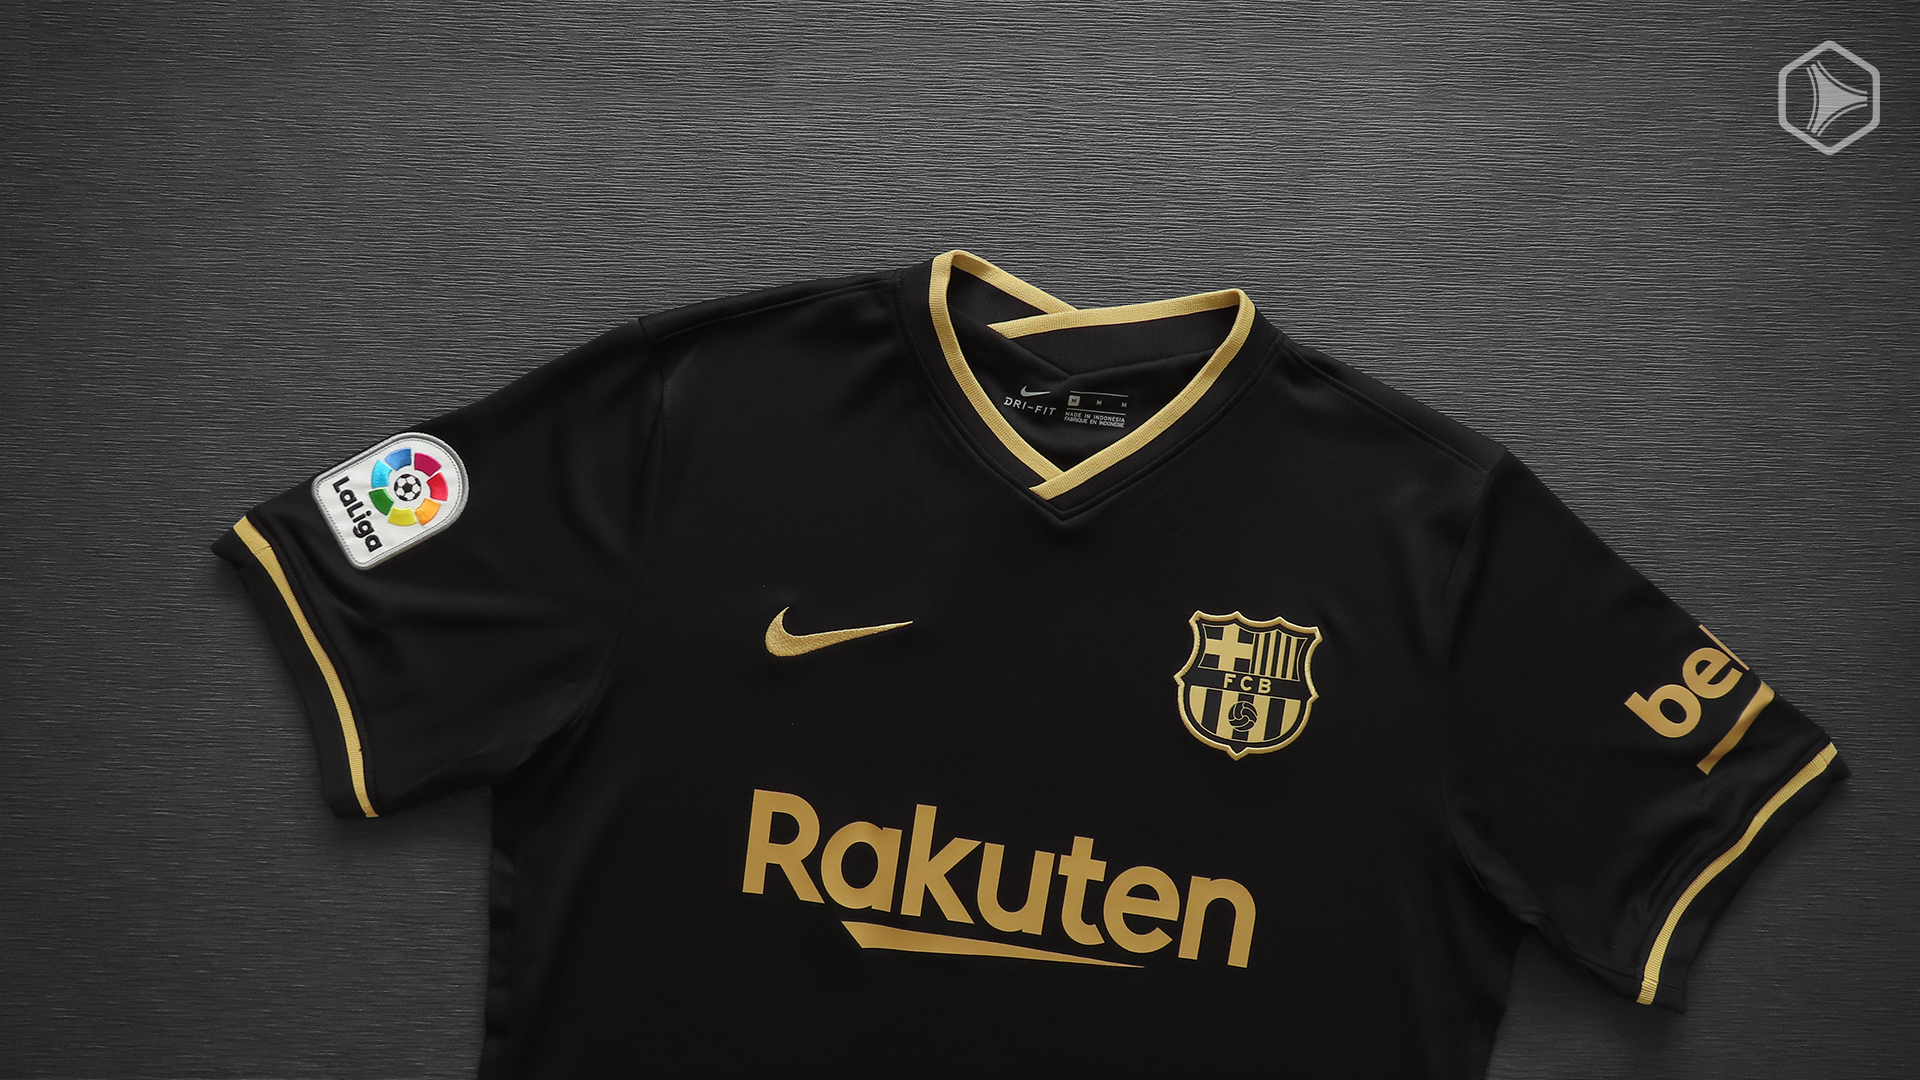 Review - Camiseta alternativa Nike del FC Barcelona 2020/21 - MDG